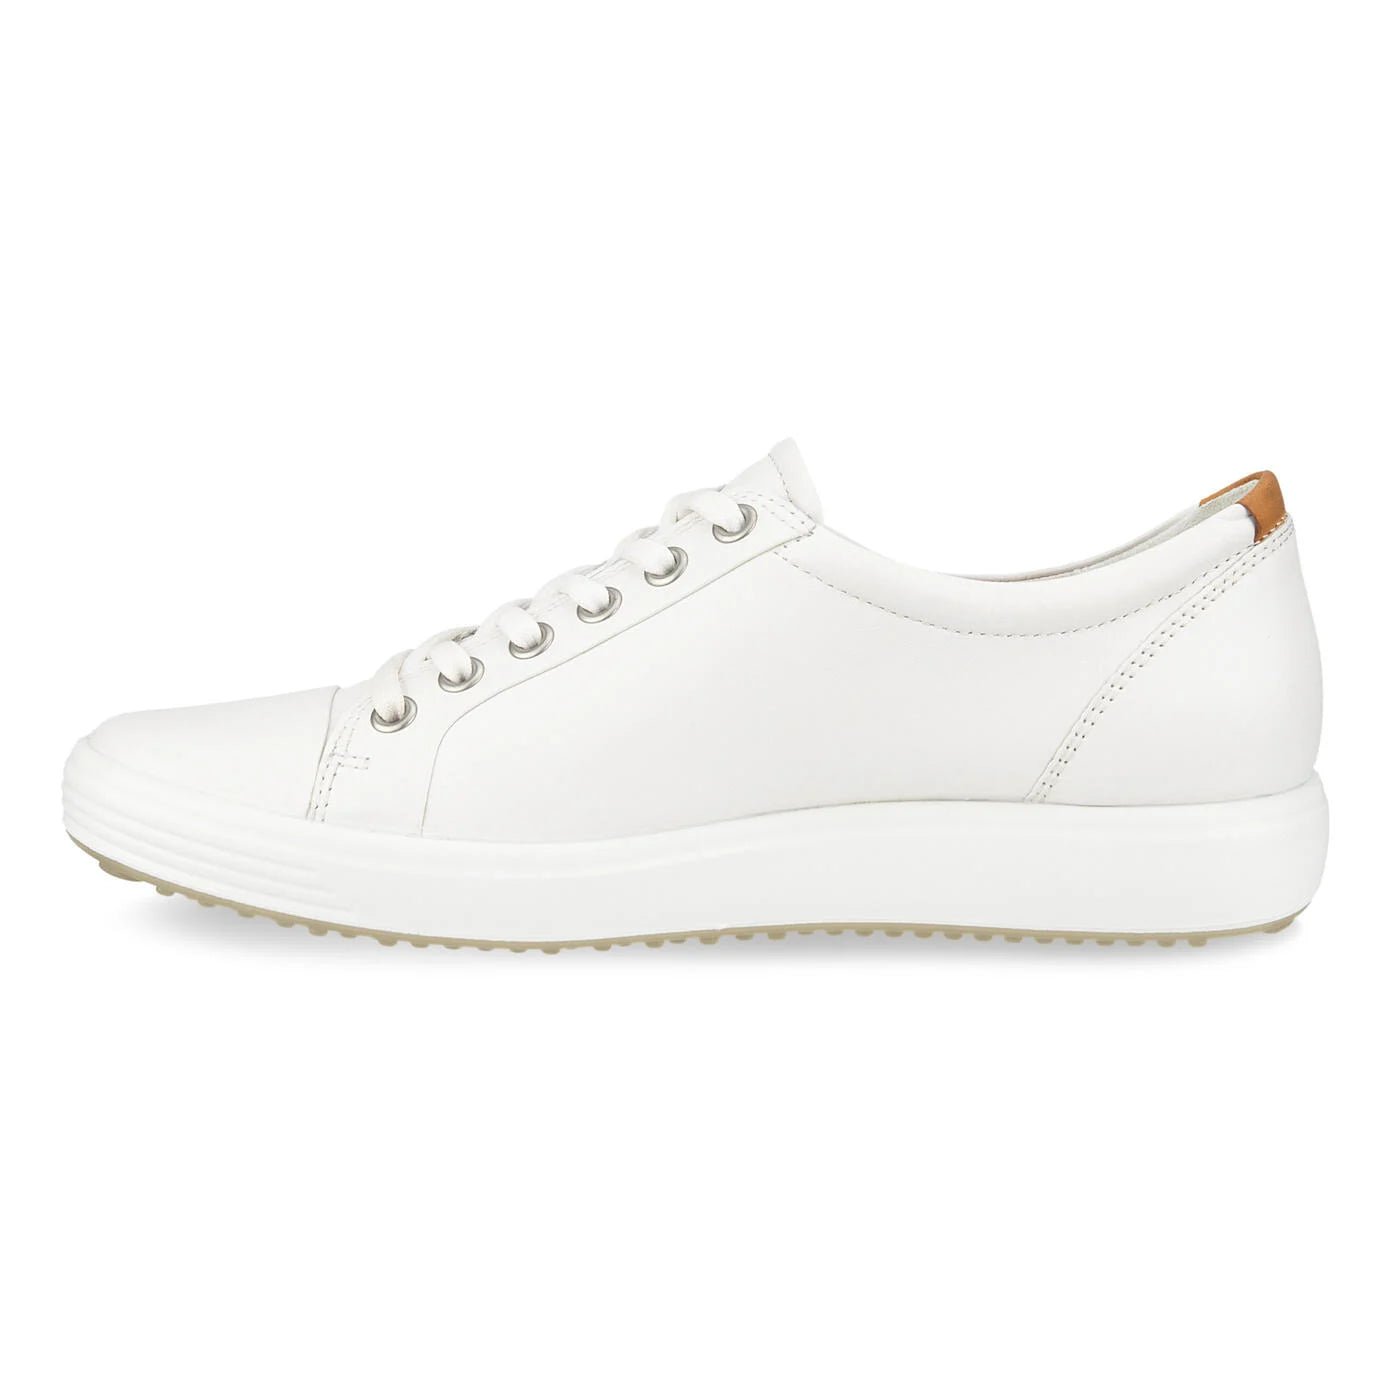 Ecco Women's Soft 7 Sneaker - White